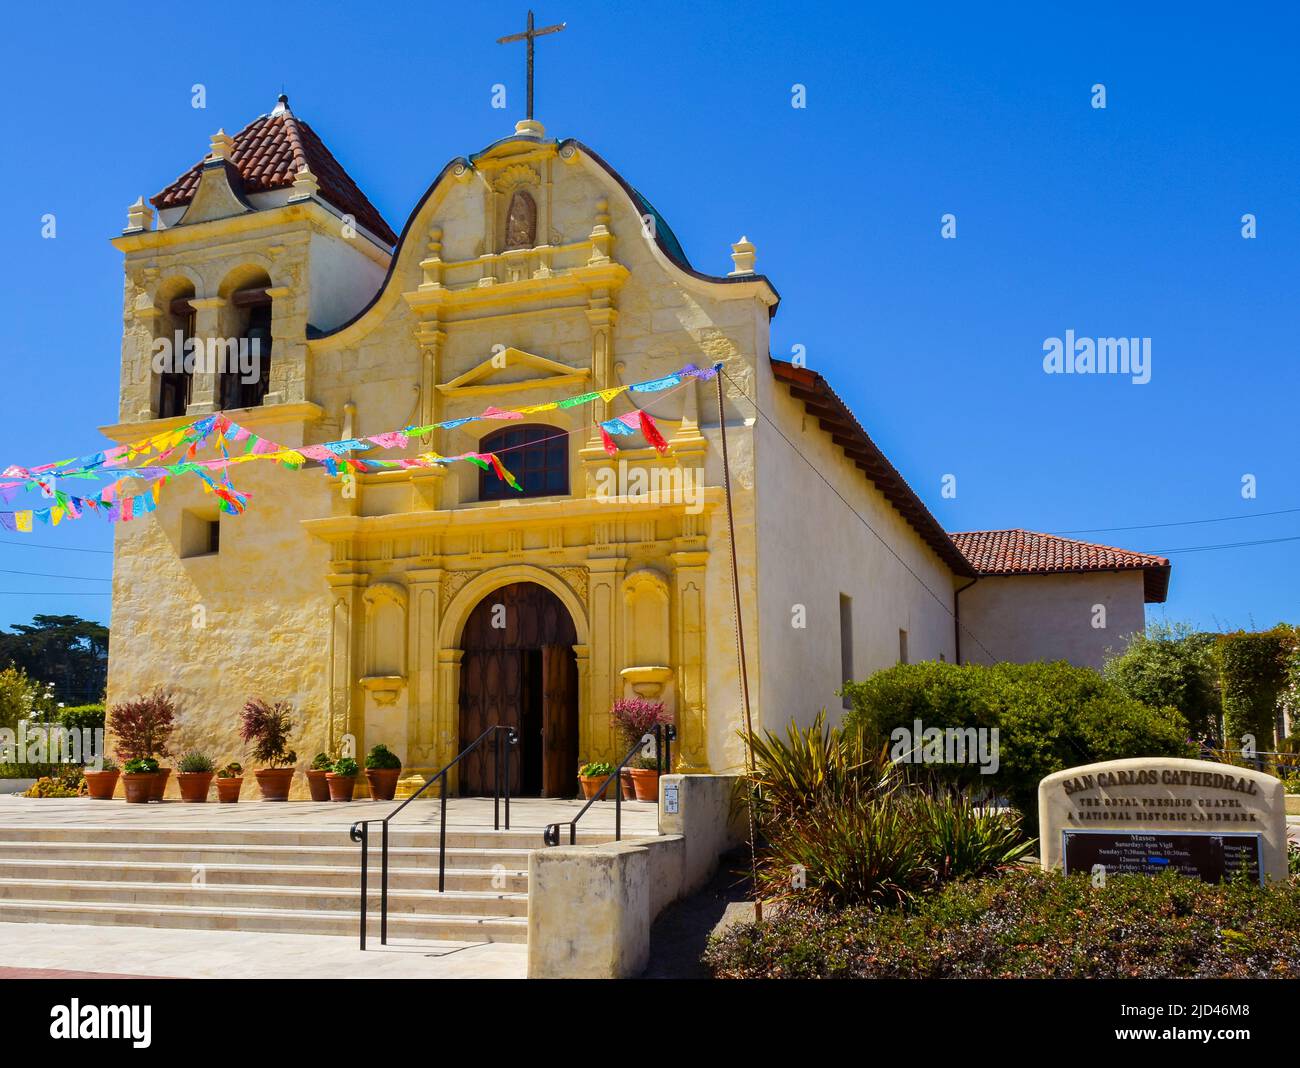 La cathédrale de San Carlos Borromeo, également connue sous le nom de chapelle royale Presidio - Monterey, Californie. C'est un site historique national des États-Unis. Banque D'Images